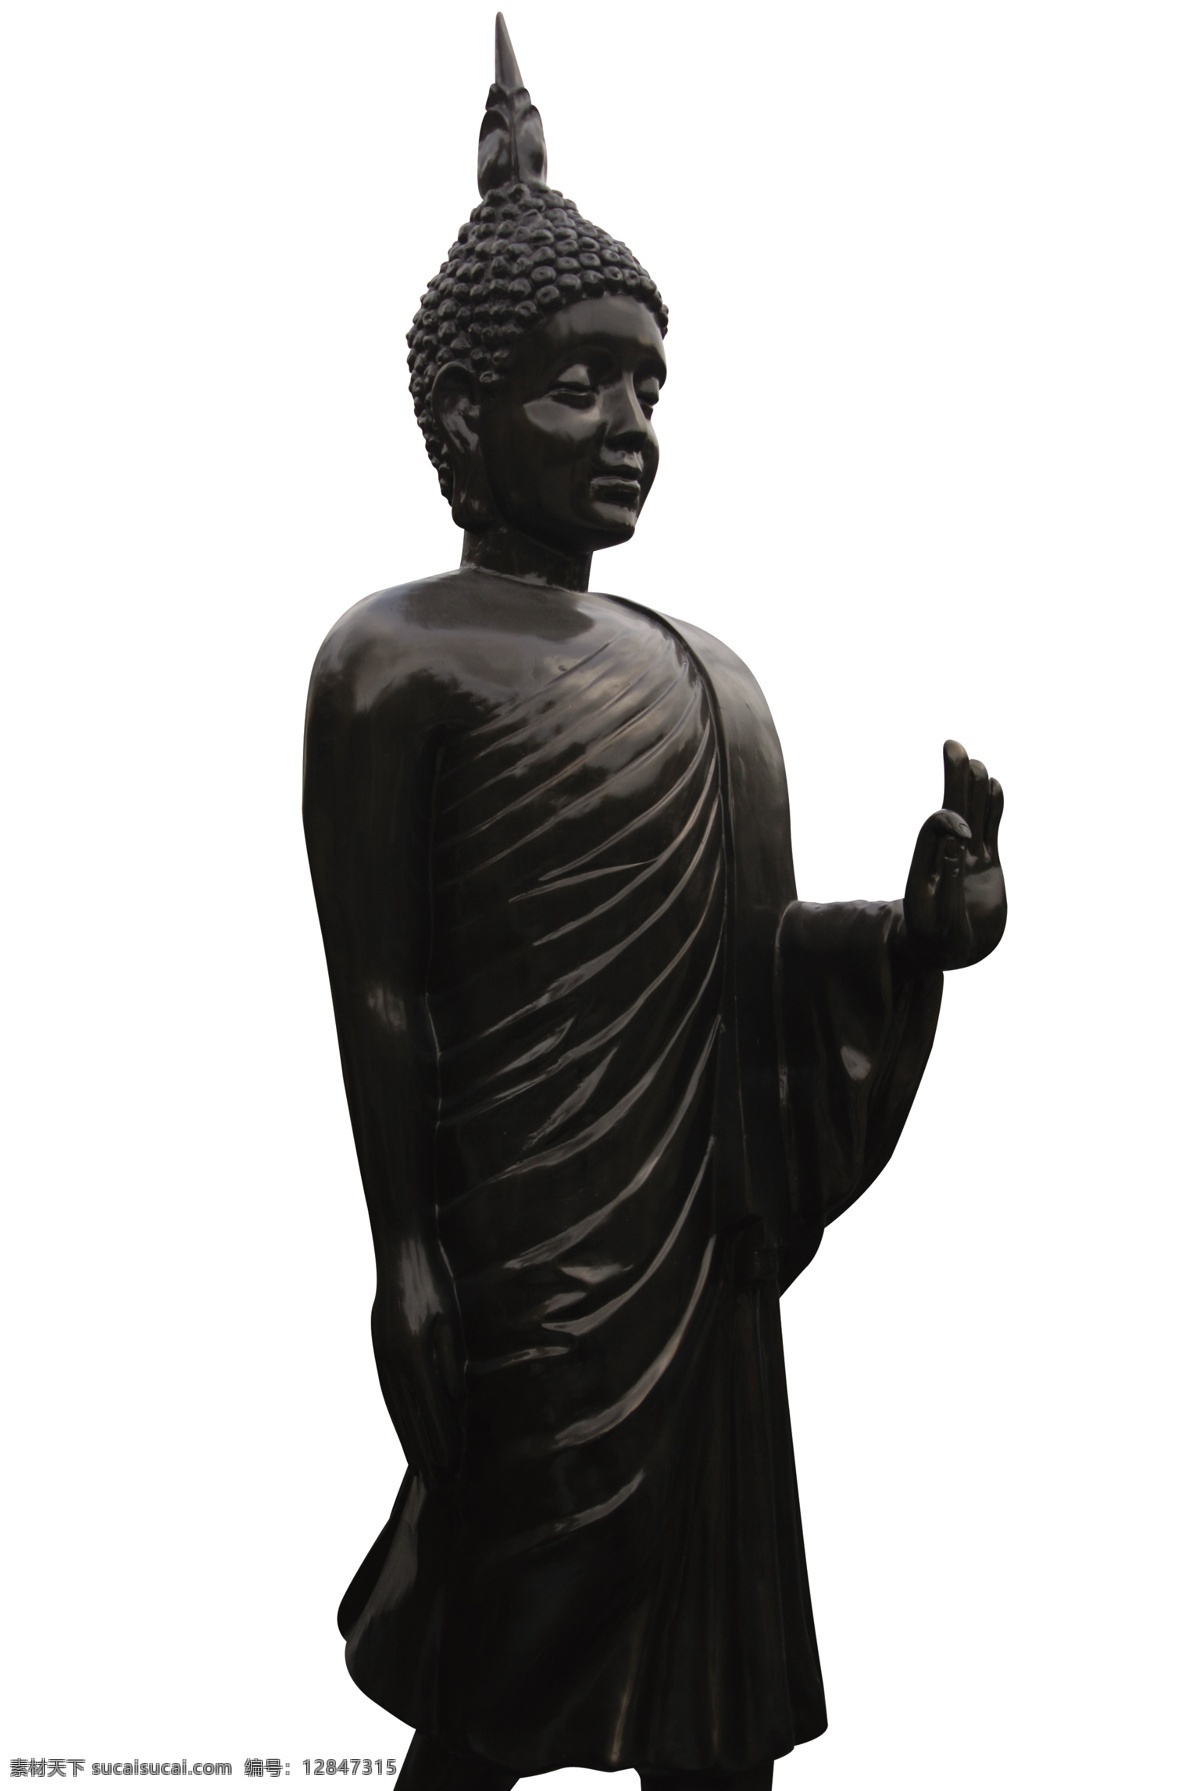 分层 雕塑 佛教 建筑园林 源文件 人物 模板下载 佛教雕塑图片 佛教雕塑 佛教人物 佛教神话人物 文化艺术